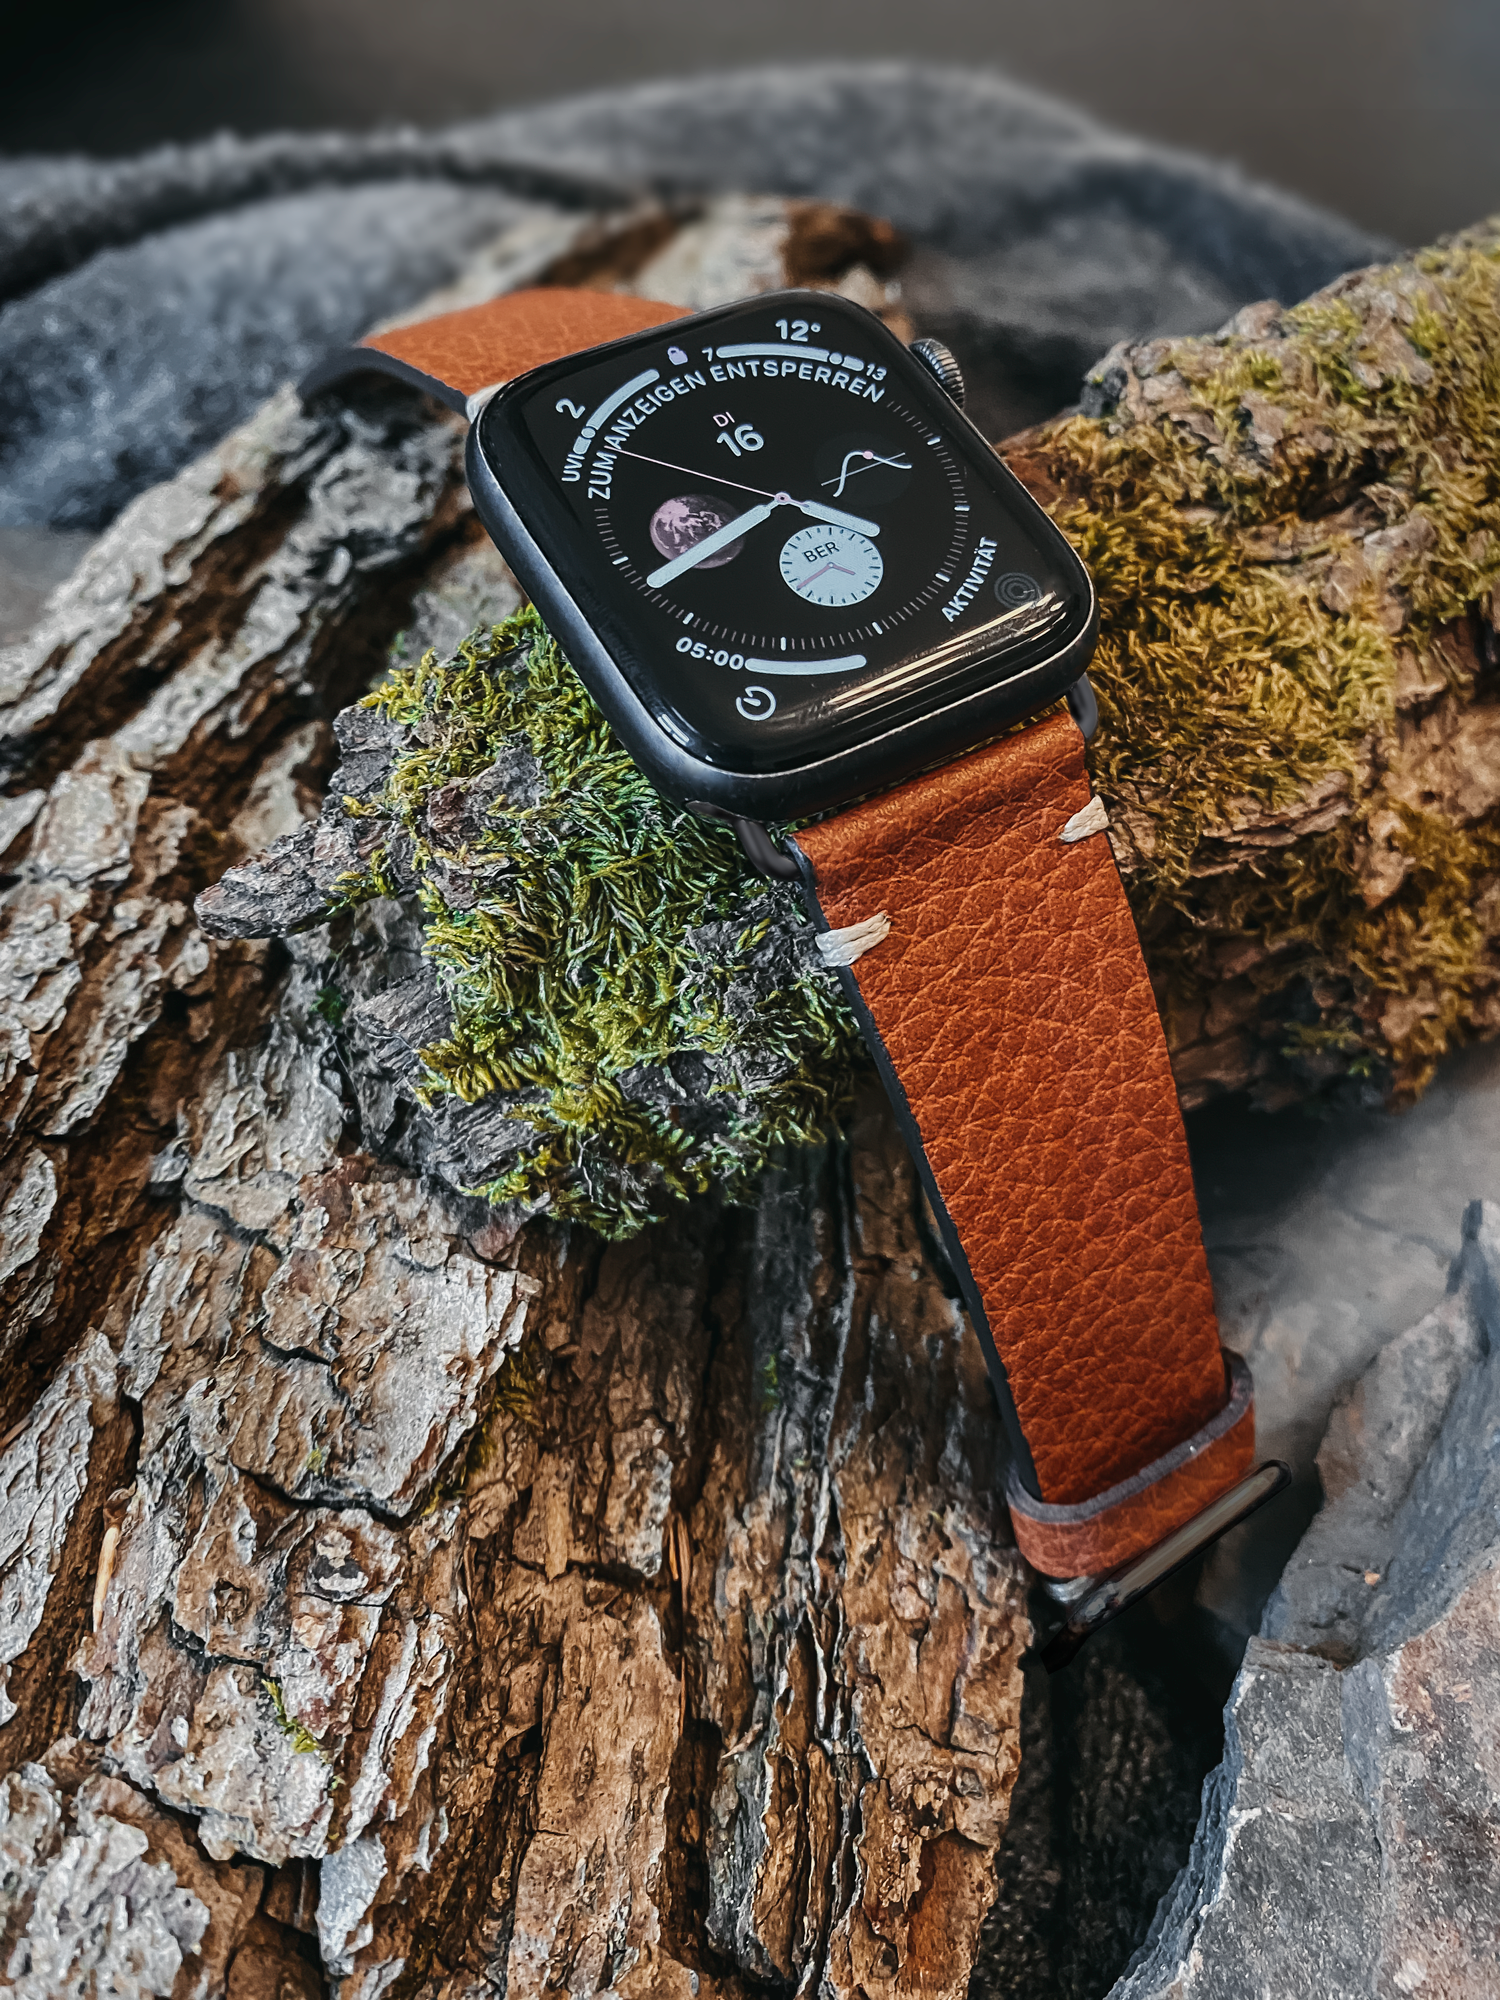  Veganes Apple Watch Armband aus Lederimitat von Bionti in der Farbe Cinnamon liegt auf einem Stück Rinde